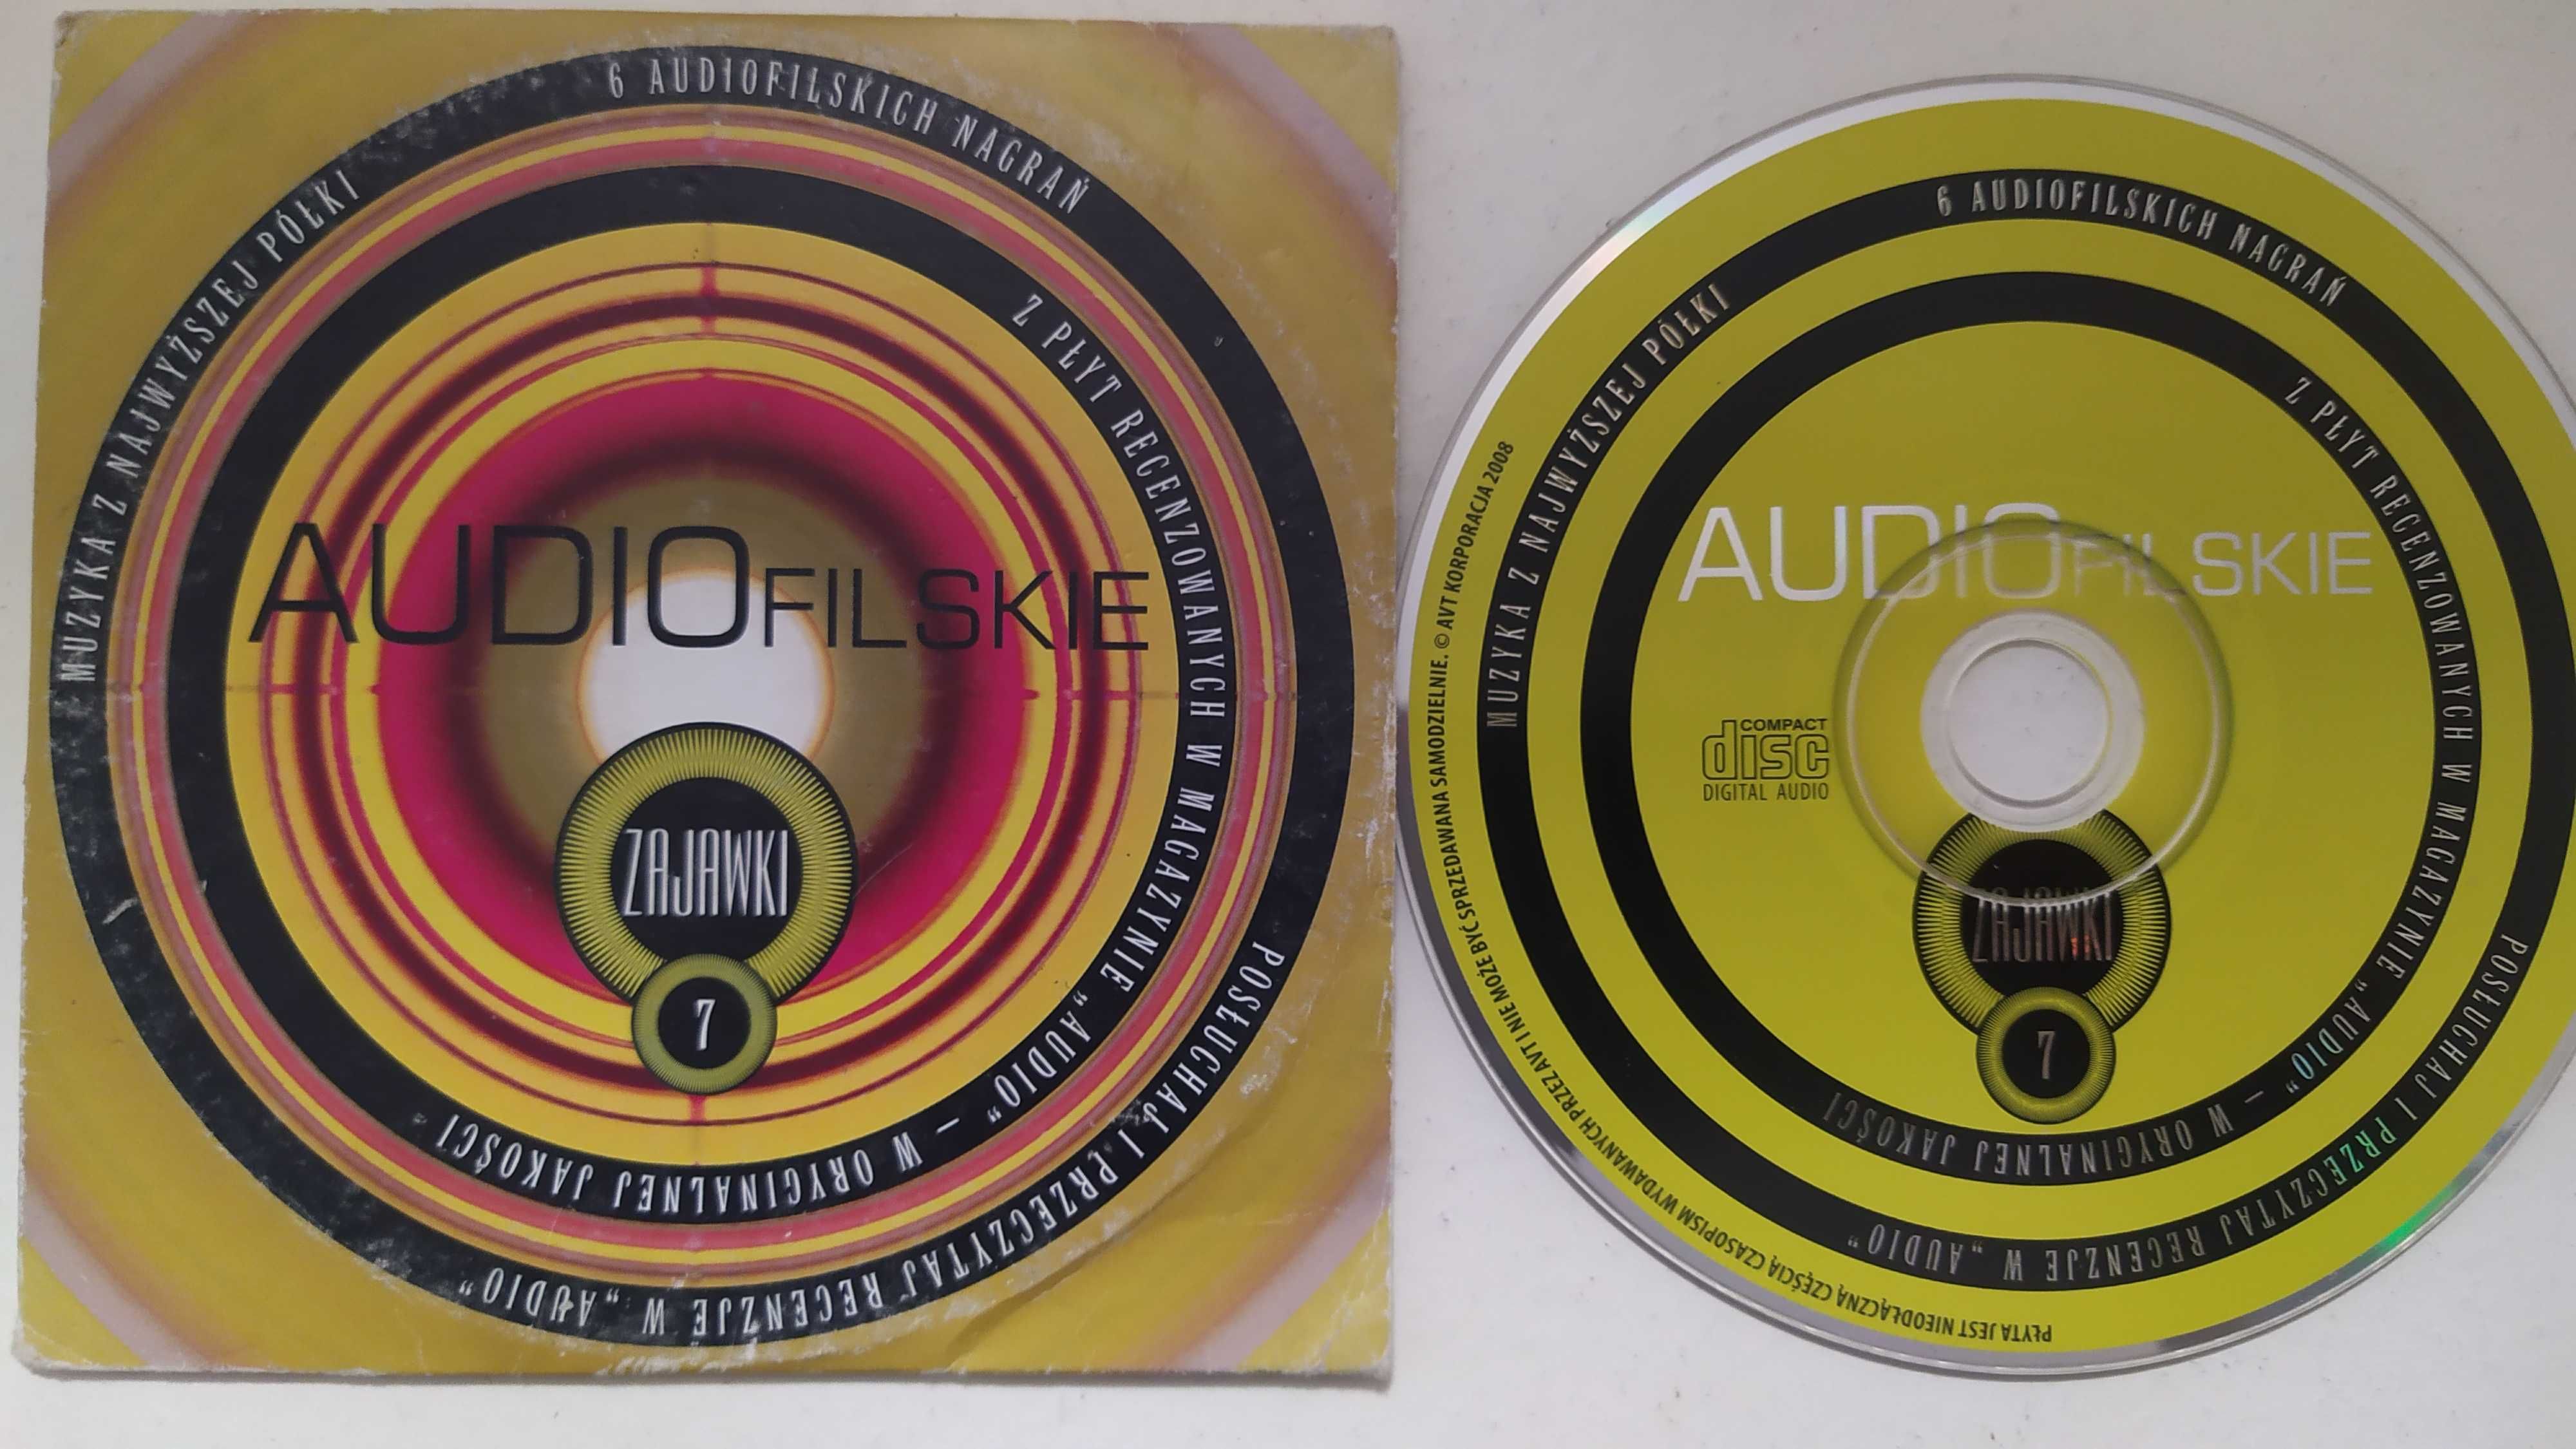 Audiofilskie Zajawki 7 Sampler CD koperta różni wykonawcy